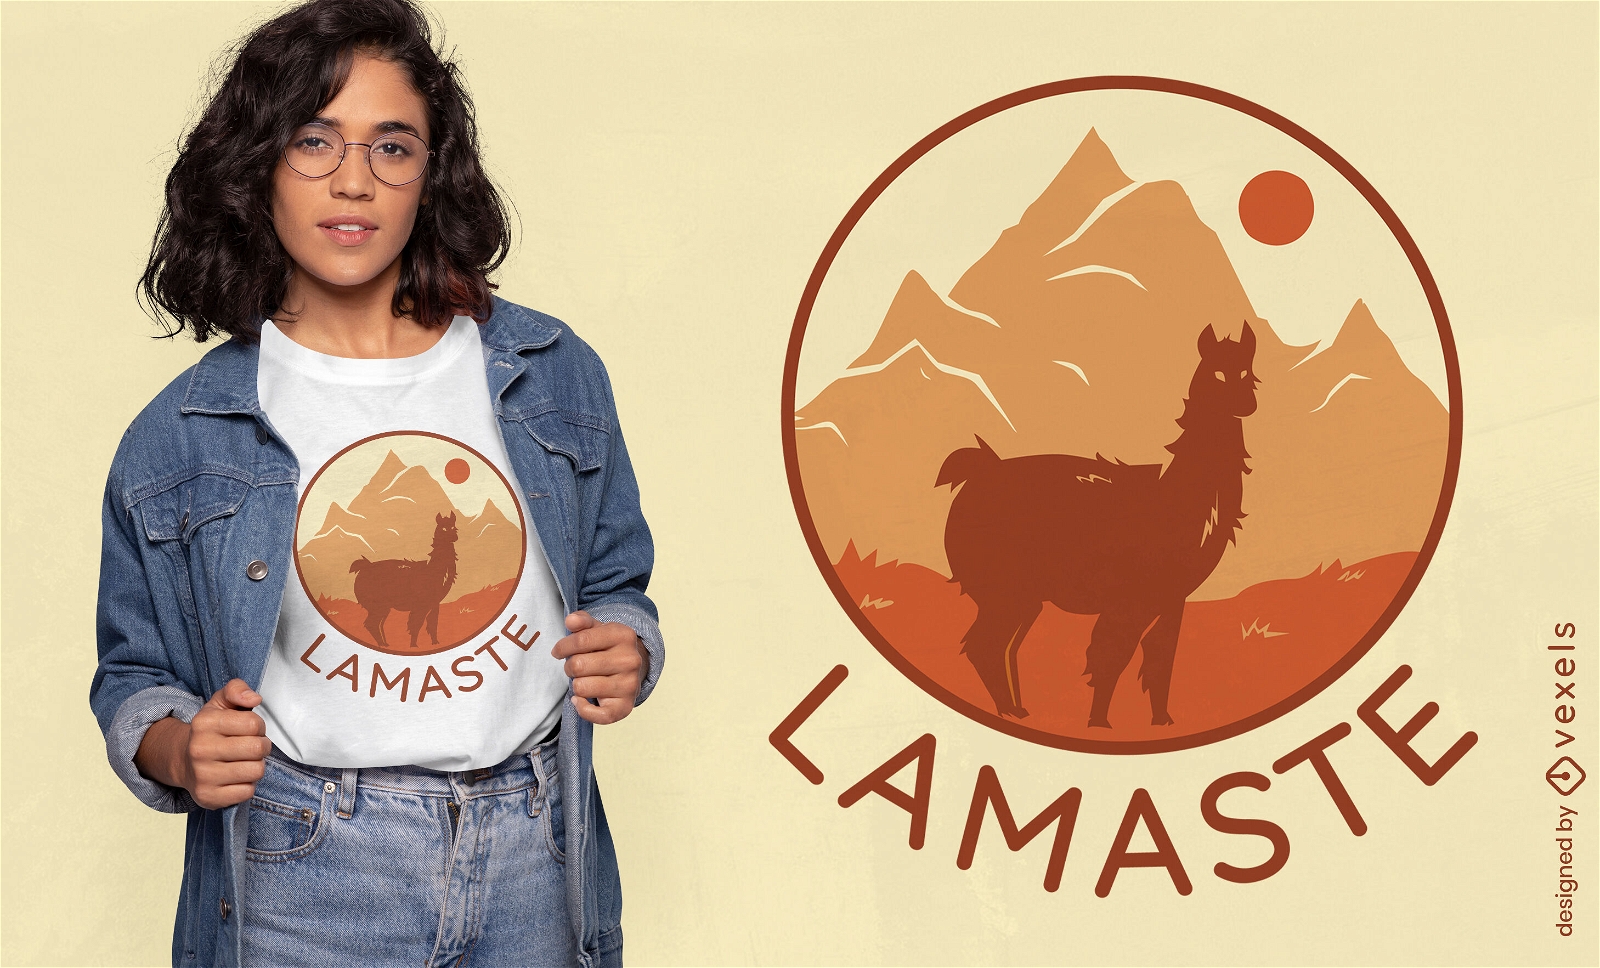 Lama-Yoga-Zitat-T-Shirt-Design